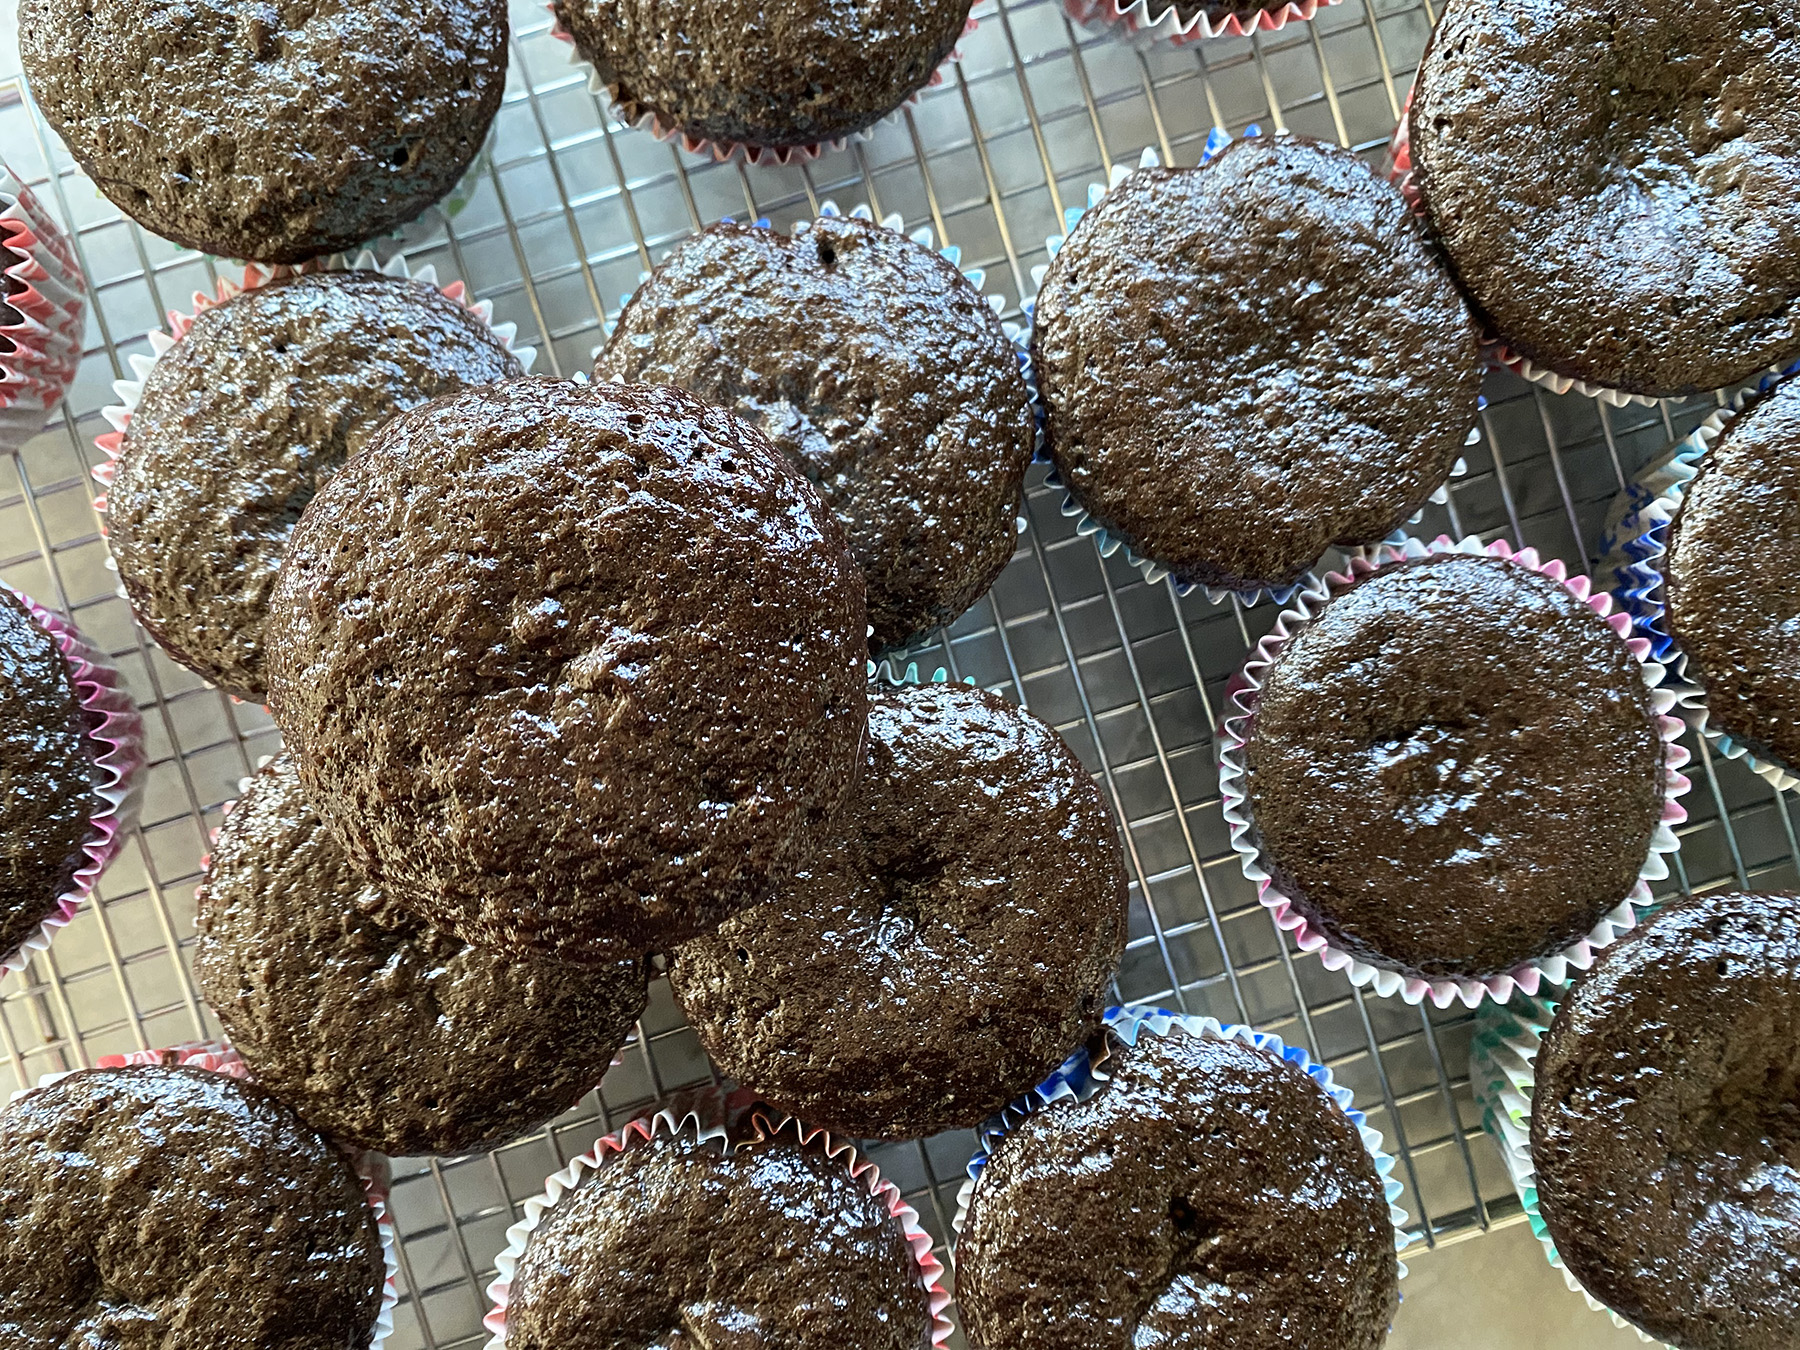 Chocolate Cupcakes (Makes 24)